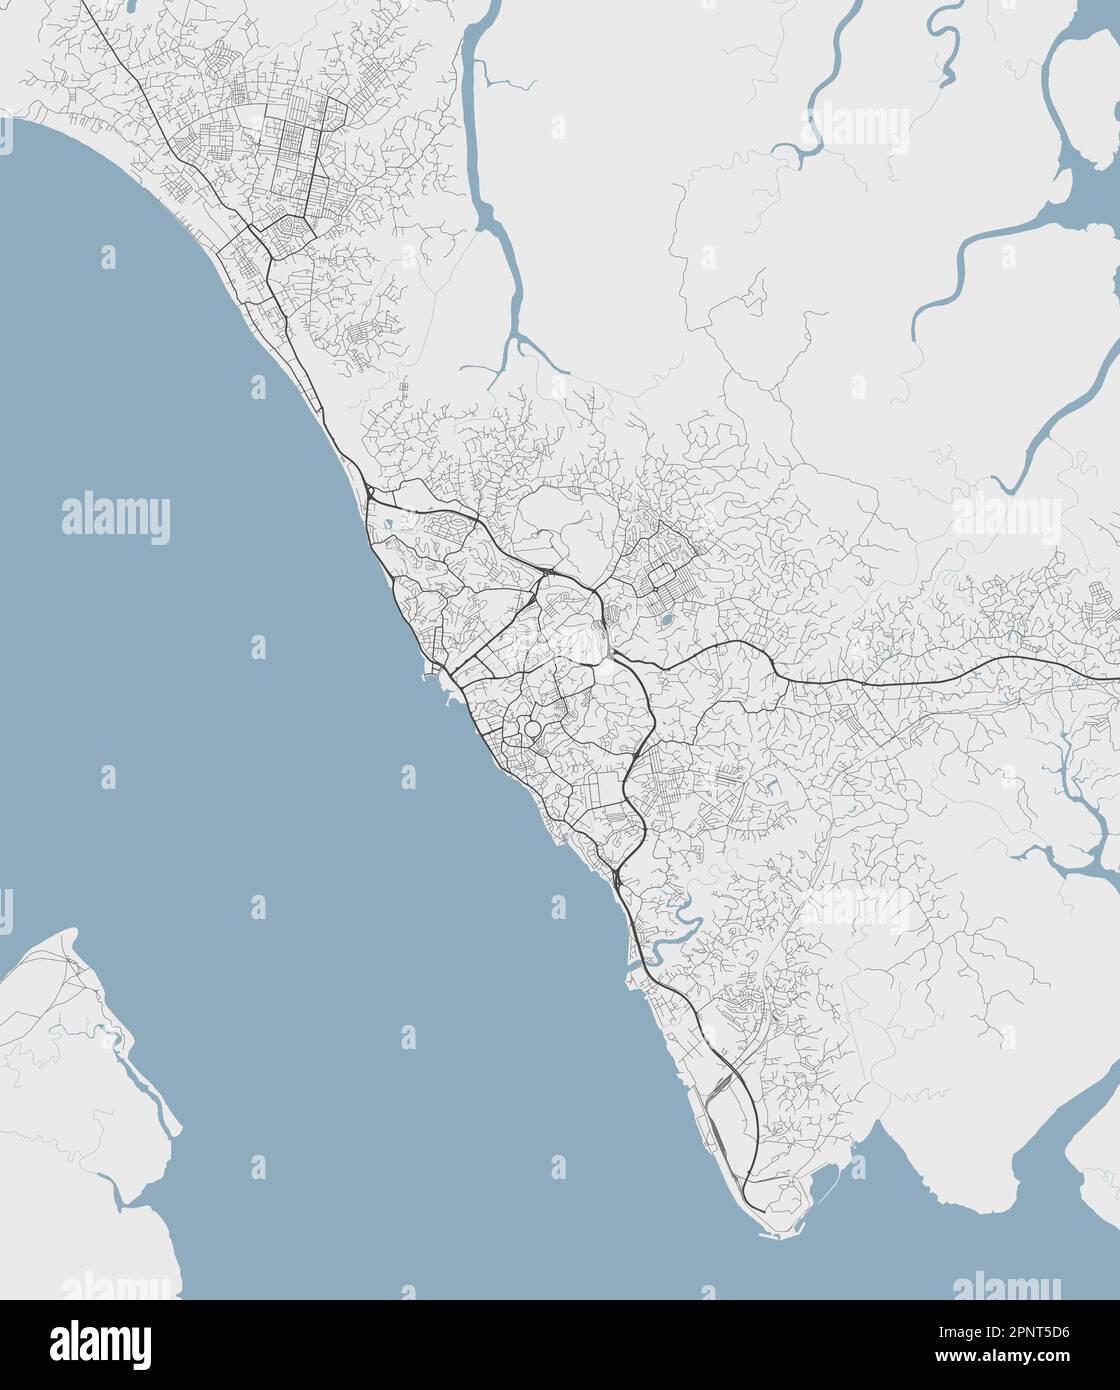 Karte von Libreville, Hauptstadt Gabuns. Stadtplan mit Flüssen und Straßen, Parks und Eisenbahnen. Vektordarstellung. Stock Vektor